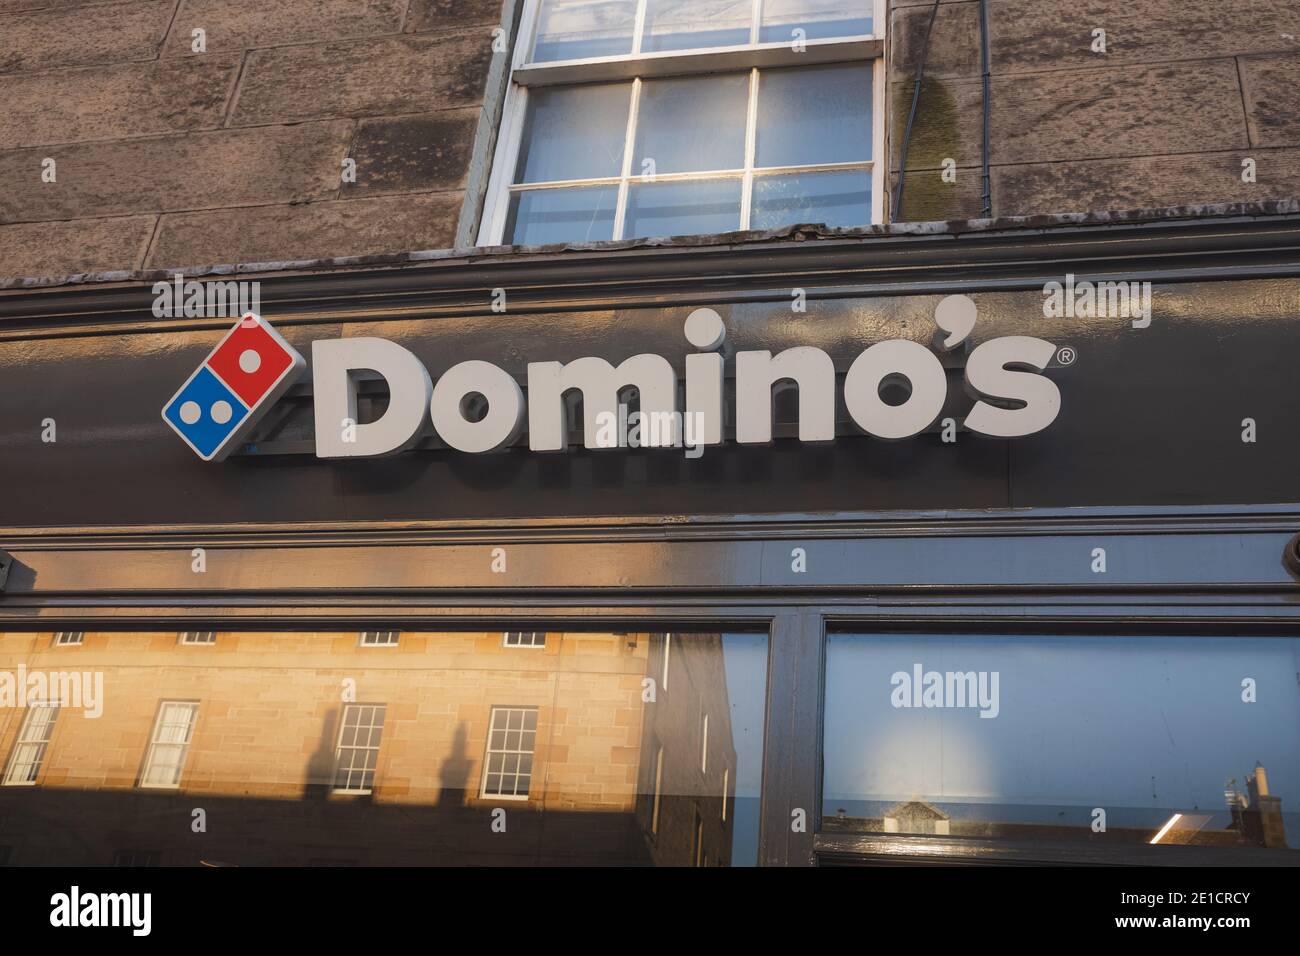 Édimbourg, Écosse - janvier 6 2021 : emplacement de Domino sur la place Raeburn à Stockbridge, Édimbourg. Domino's est l'une des plus grandes chaînes de pizzas au monde Banque D'Images